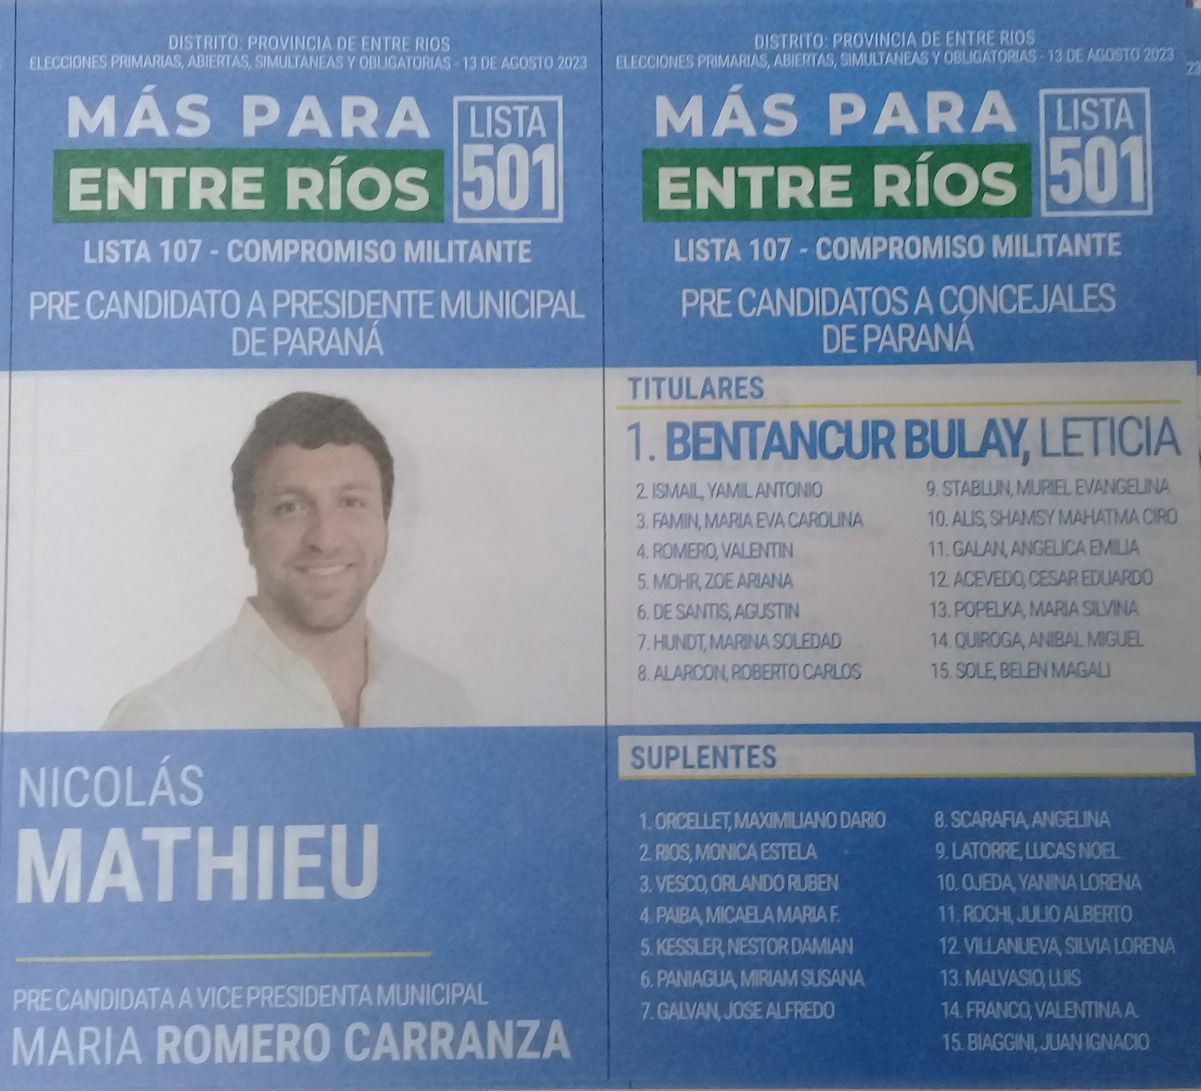 Lista 501: Más Para Entre Ríos - Nicolás Mathieu.